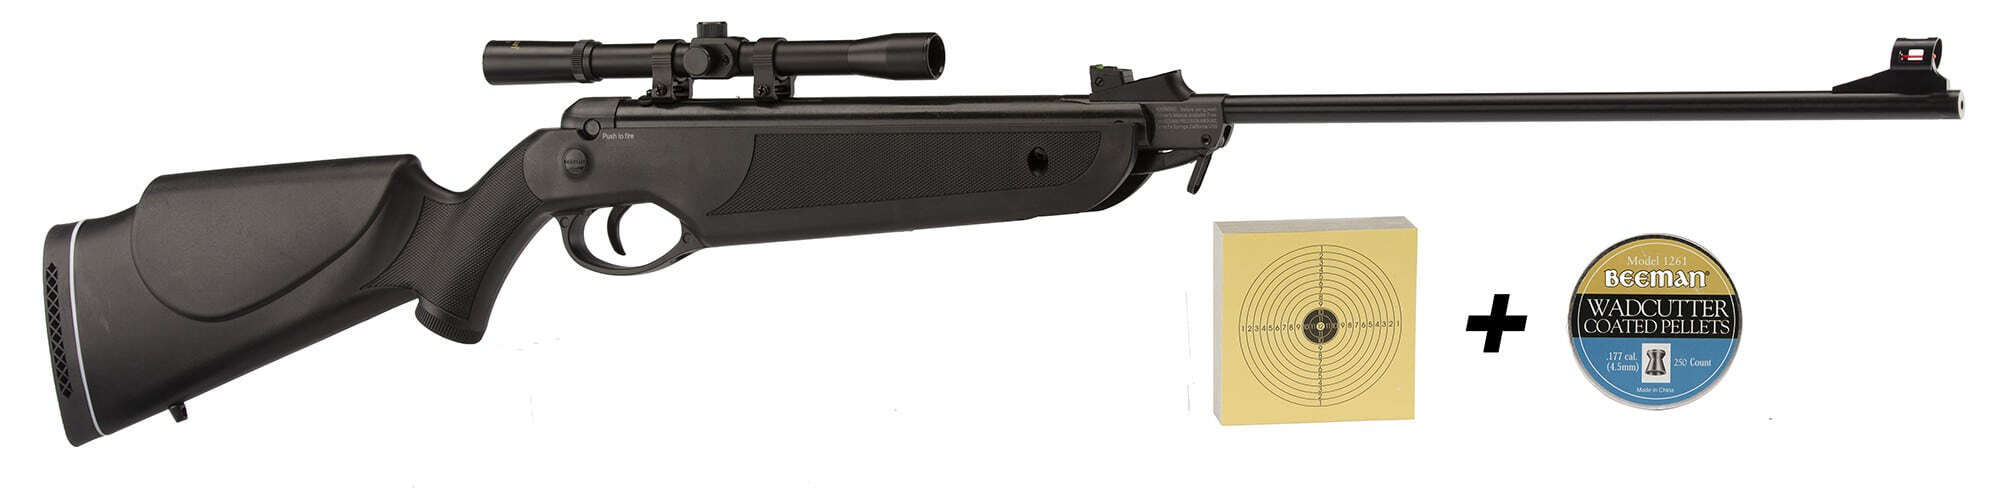 100 Cibles Elite Airgun 14x14 cm - Armurerie Loisir